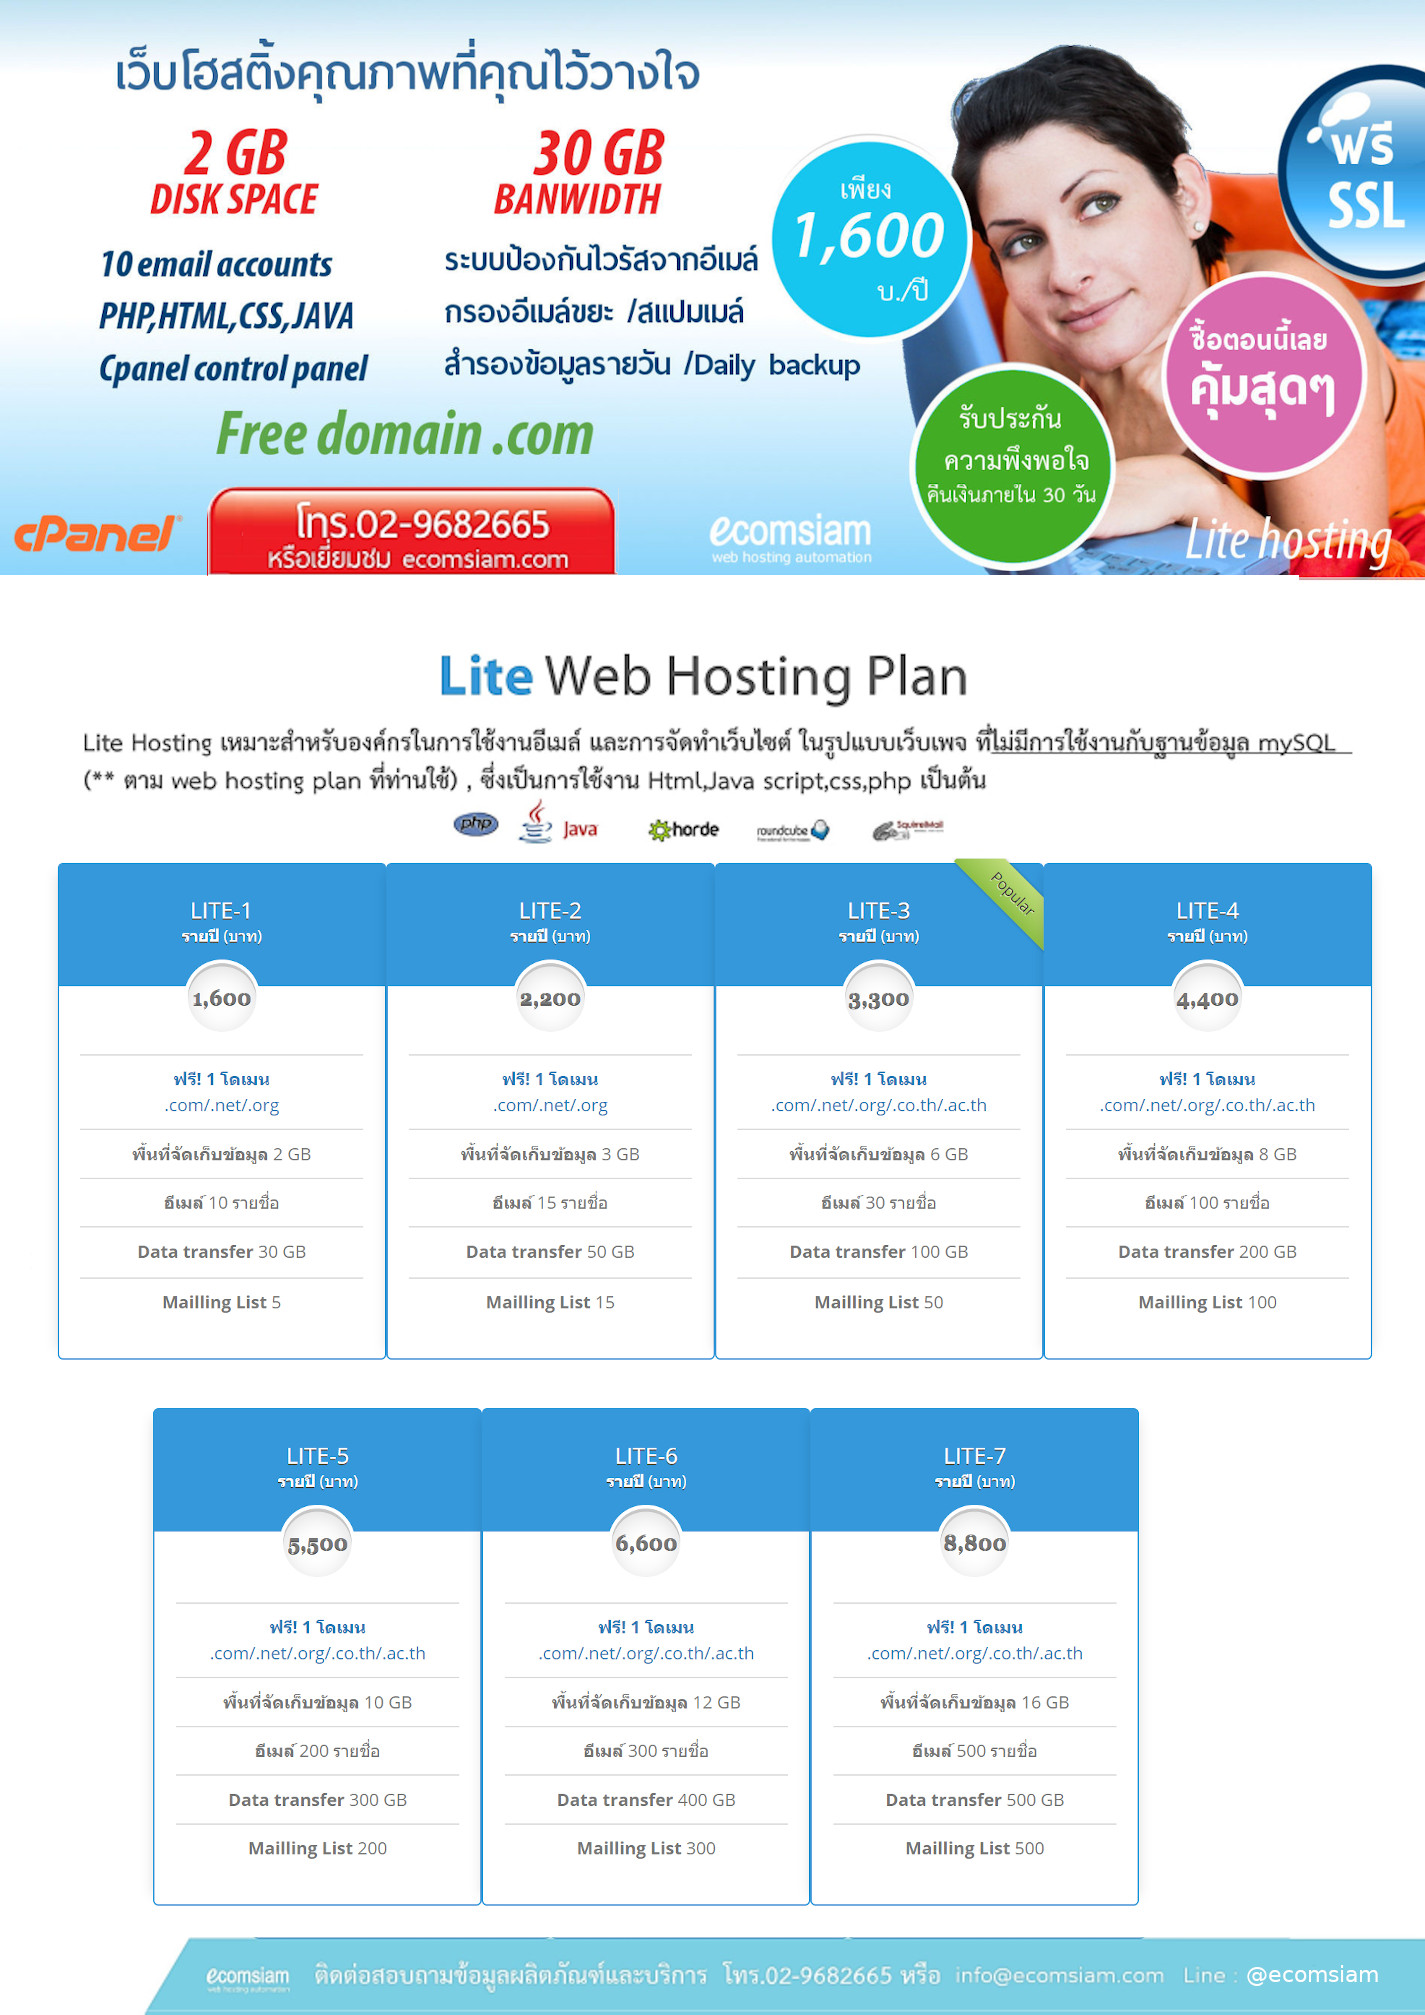 โบชัวร์แนะนำ Web Hosting Thai ฟรีโดเมน เว็บโฮสติ้งไทย ฟรี Ssl-Web Hosting  Thailand-Reliable Web Hosting Thailand-Wordpress Web Hosting Thai บริการ  Email Hosting พื้นที่มาก ราคาไม่แพง Linux Web Hosting Vps Server จดโดเมน จด โดเมนภาษาไทย จดโดเมน .Co.Th จด ...